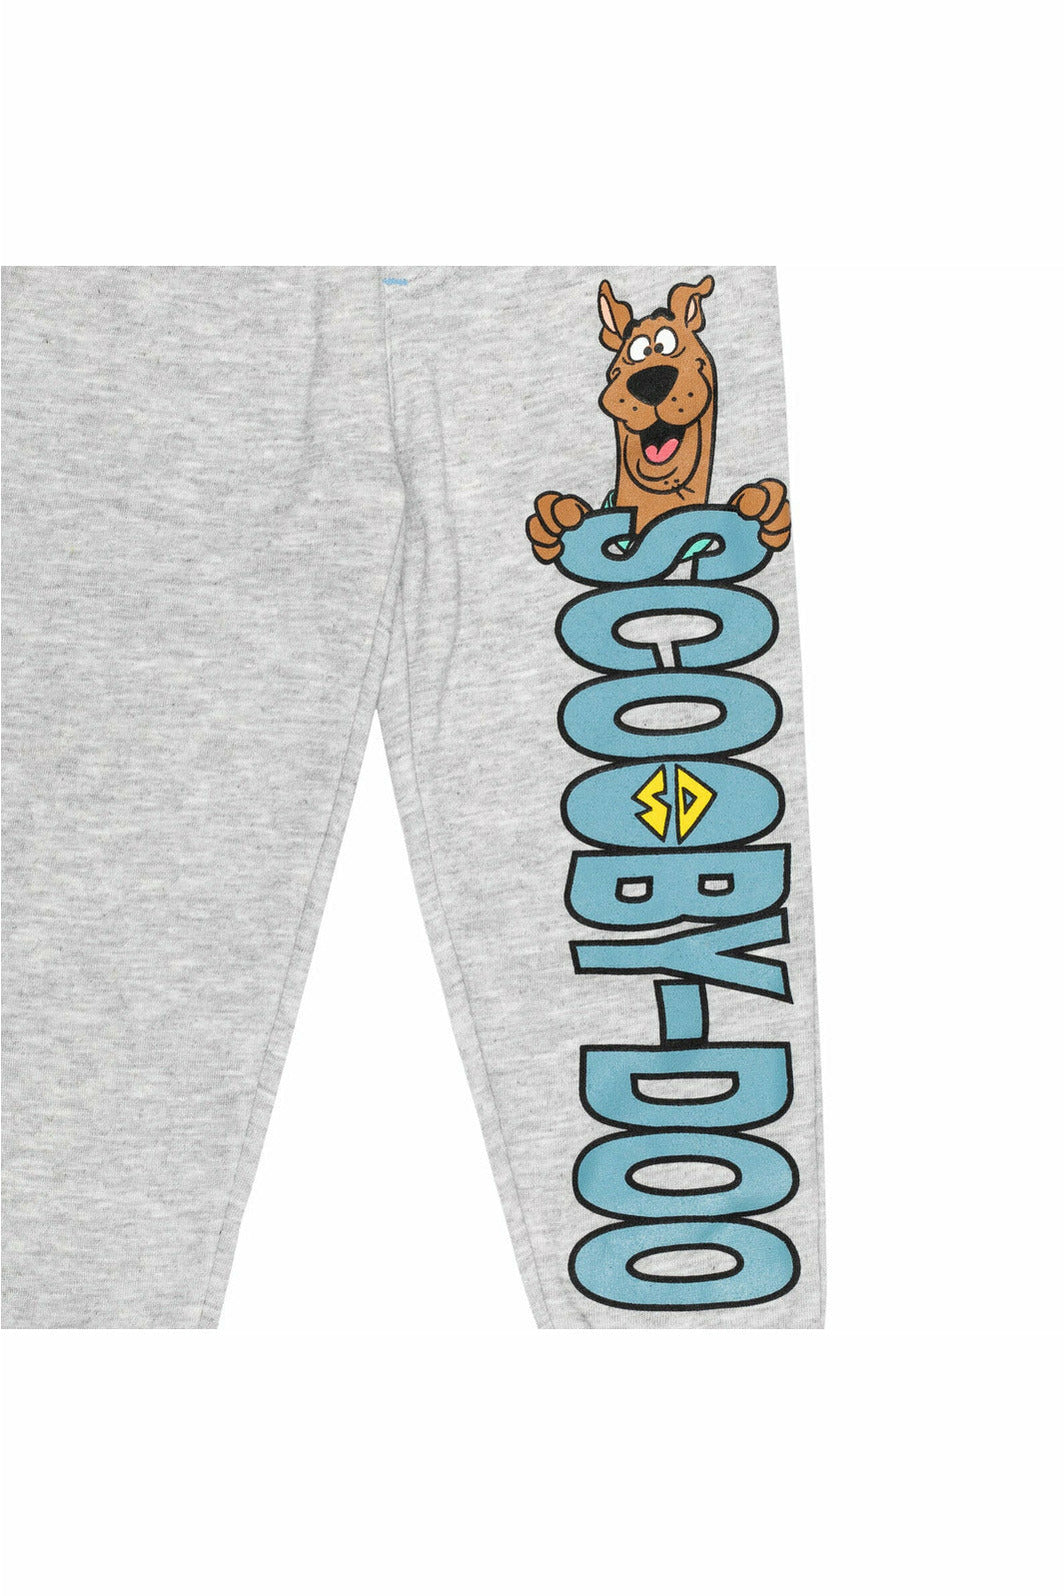 Scooby-Doo Fleece 2 Pack Jogger Pants